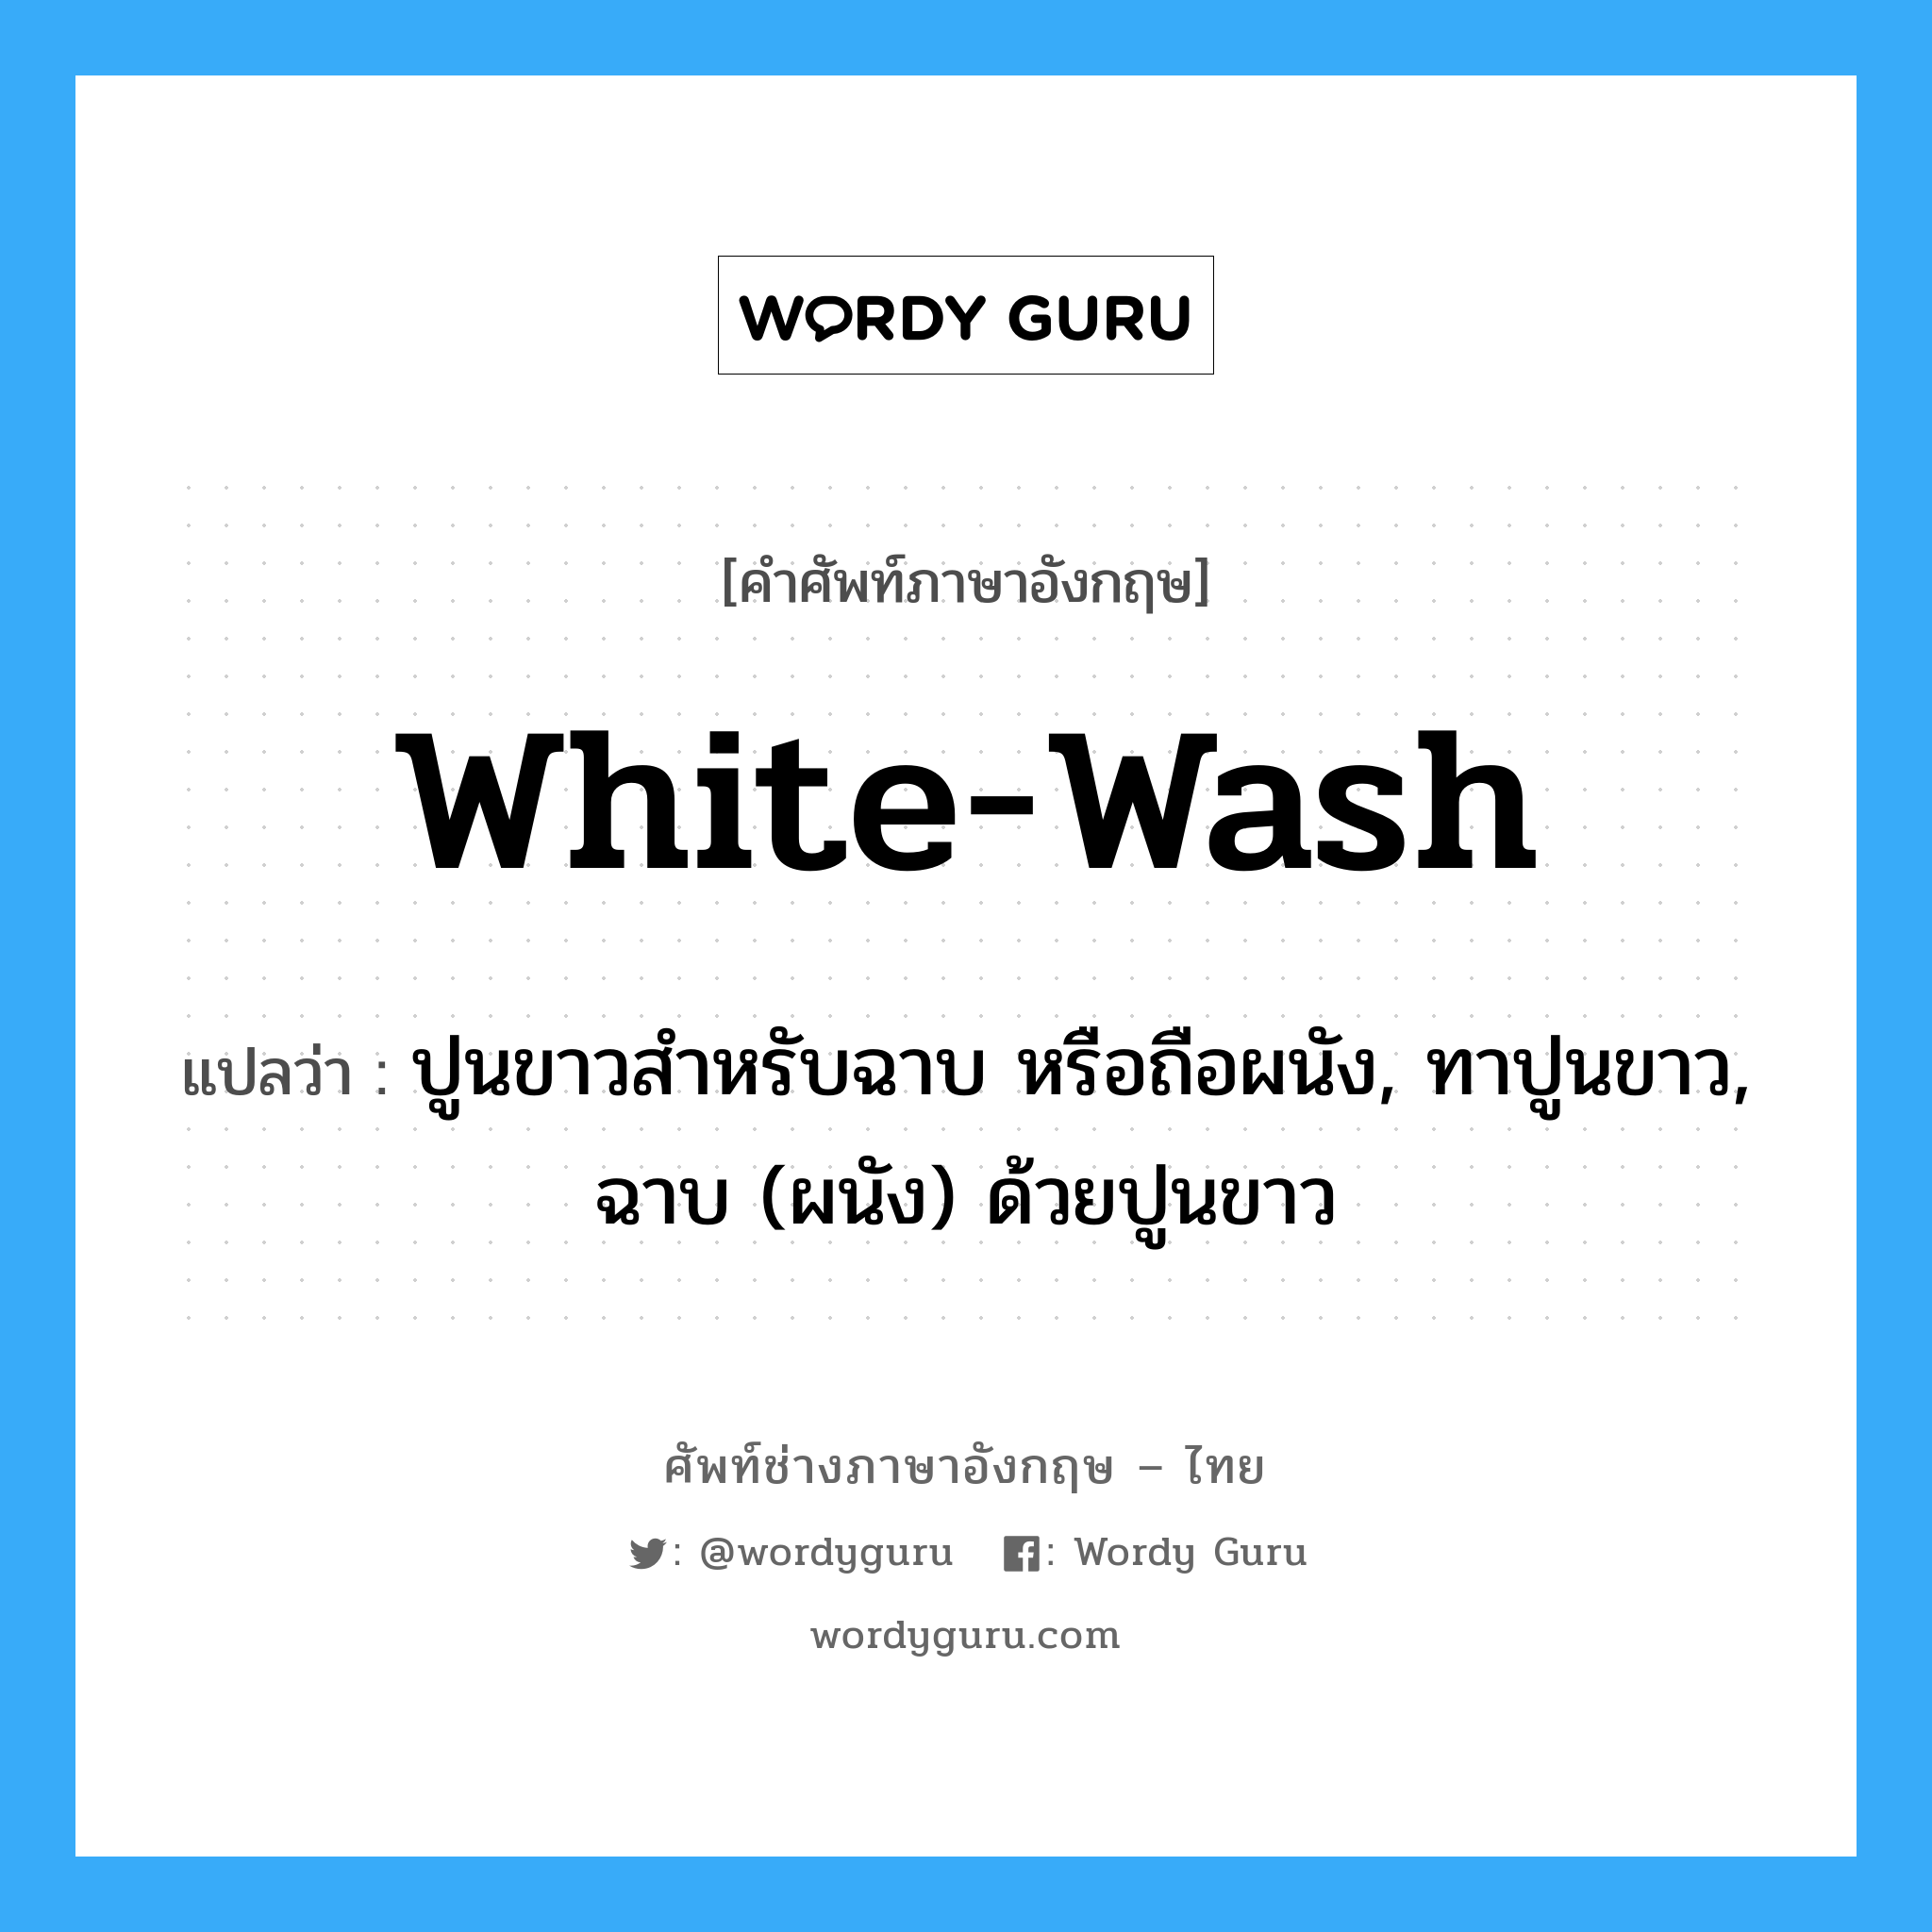 white-wash แปลว่า?, คำศัพท์ช่างภาษาอังกฤษ - ไทย white-wash คำศัพท์ภาษาอังกฤษ white-wash แปลว่า ปูนขาวสำหรับฉาบ หรือถือผนัง, ทาปูนขาว, ฉาบ (ผนัง) ด้วยปูนขาว